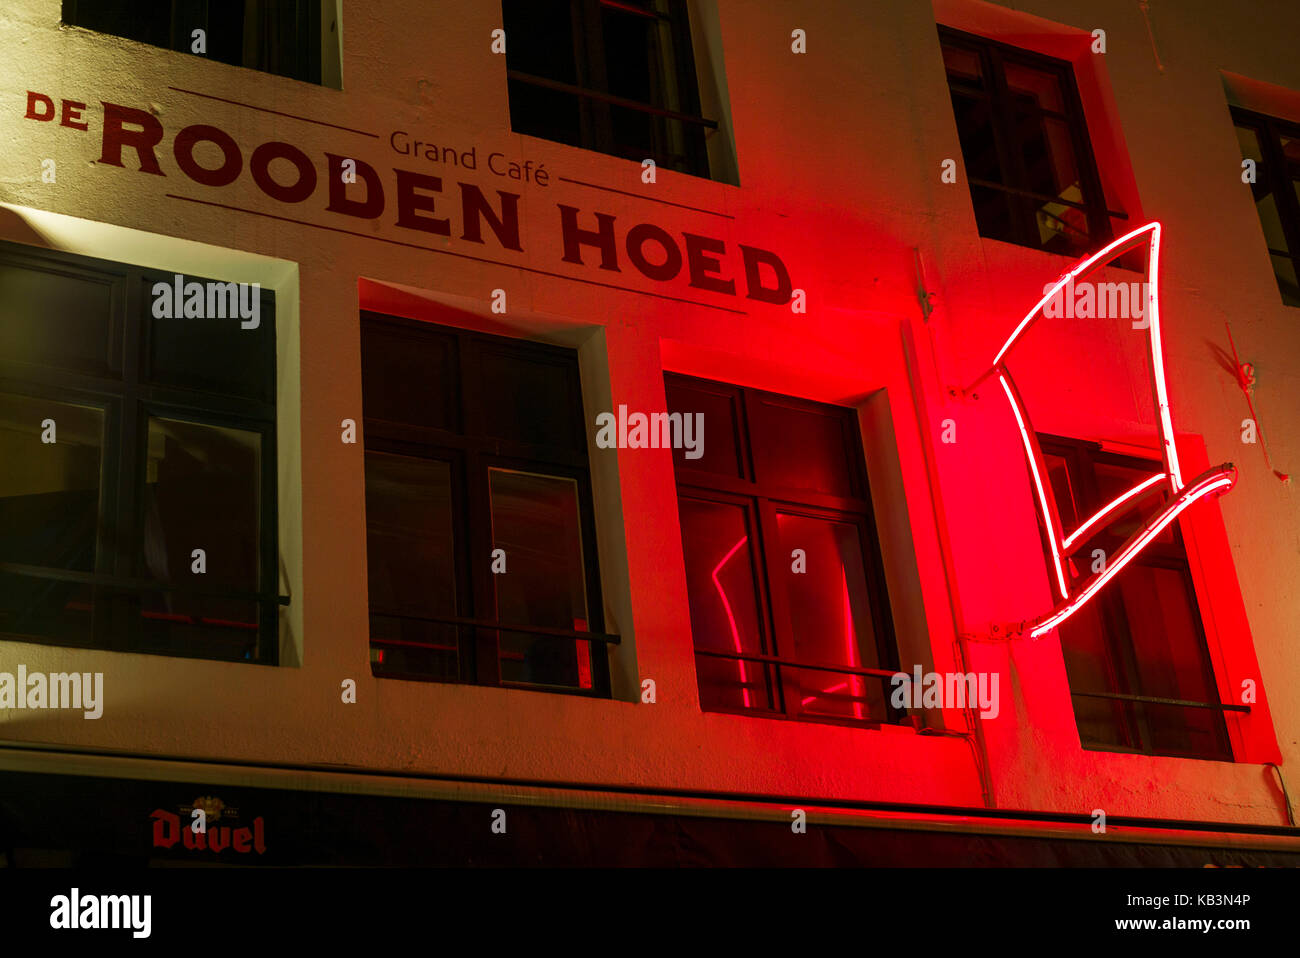 Belgium, Antwerp, De Rooden Hoed, The Red Hat Bar Stock Photo - Alamy